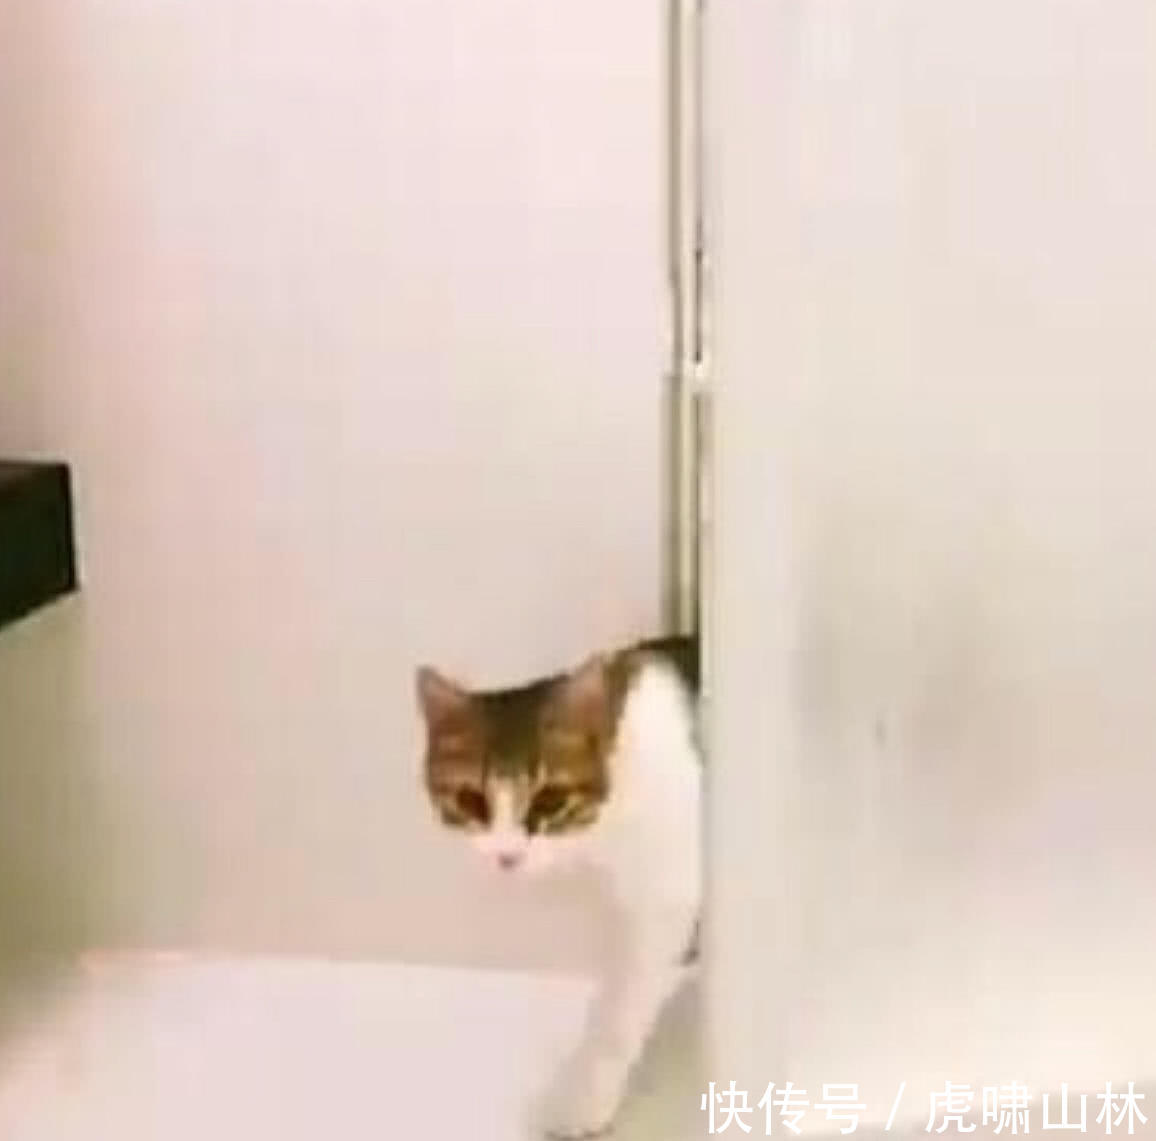 看到主人洗澡,猫咪站在浴室门口不肯离开,原因